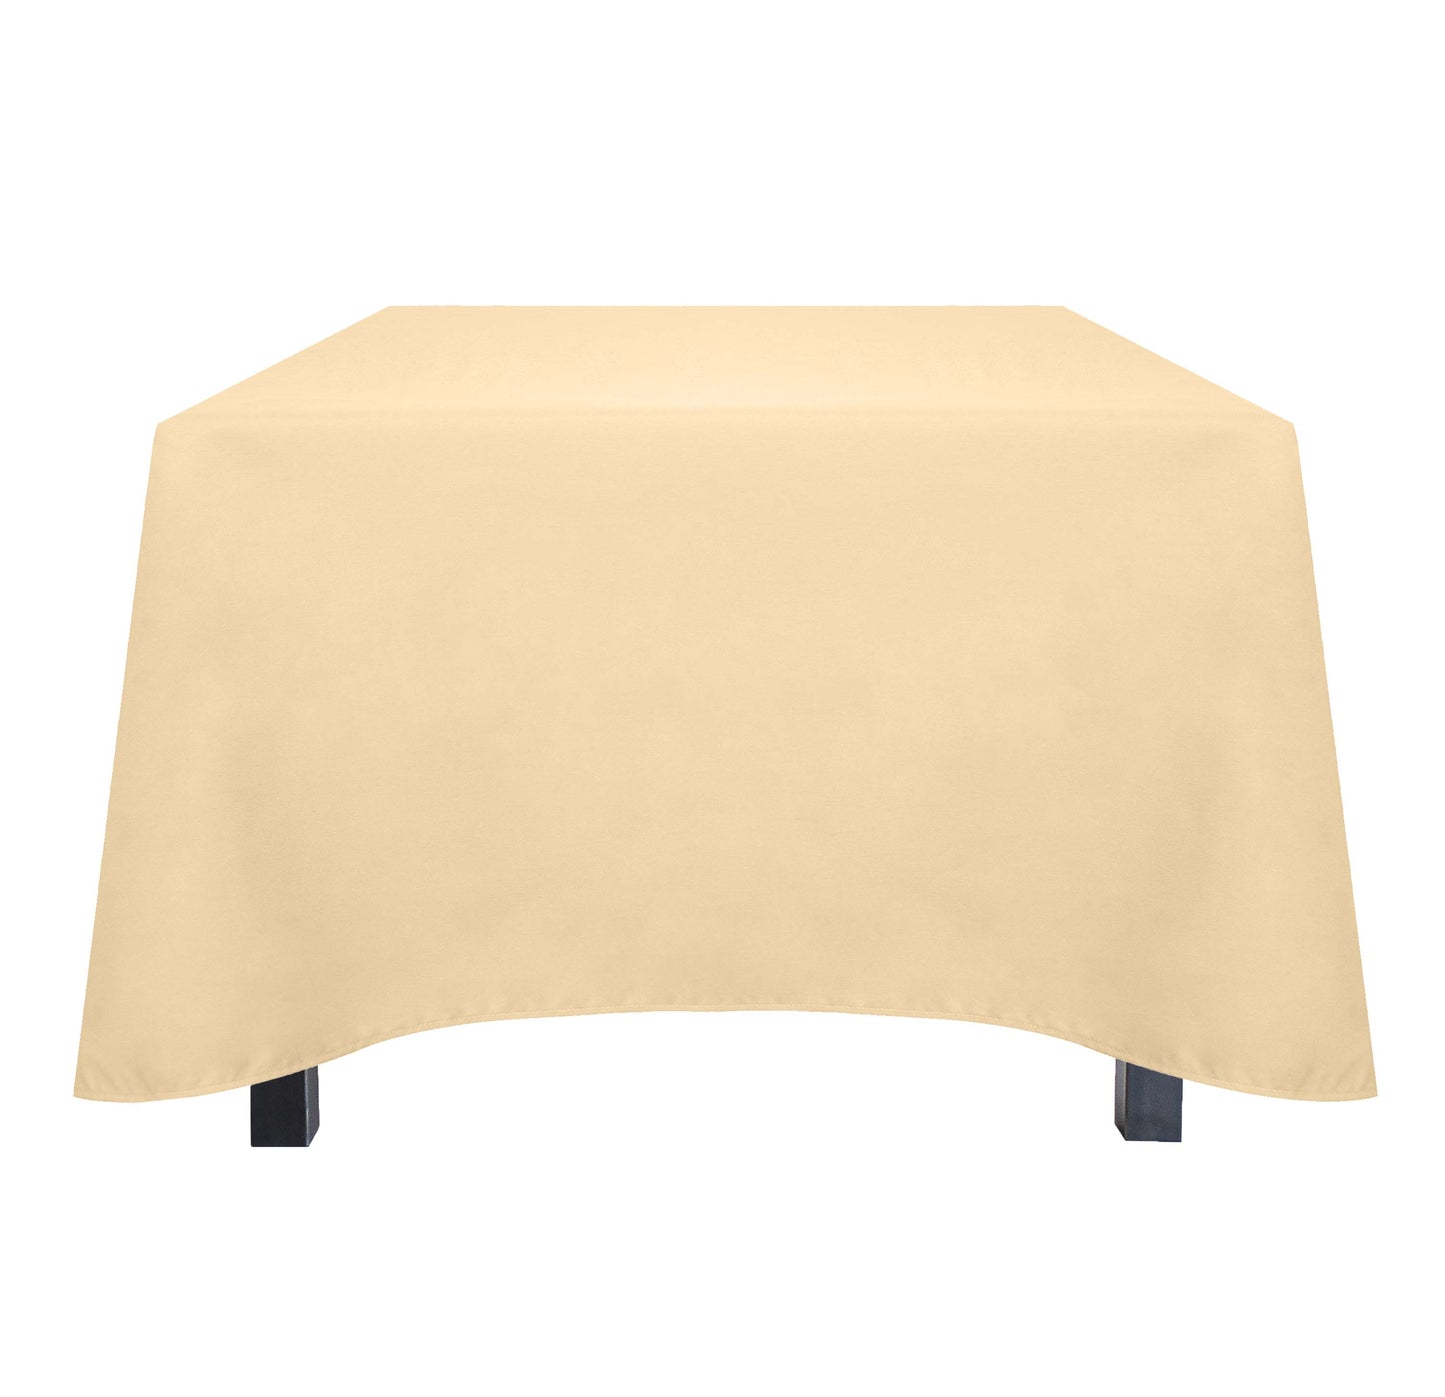 Tablecloth - Classics, 64x64 inch, Square, 36 pcs/pk